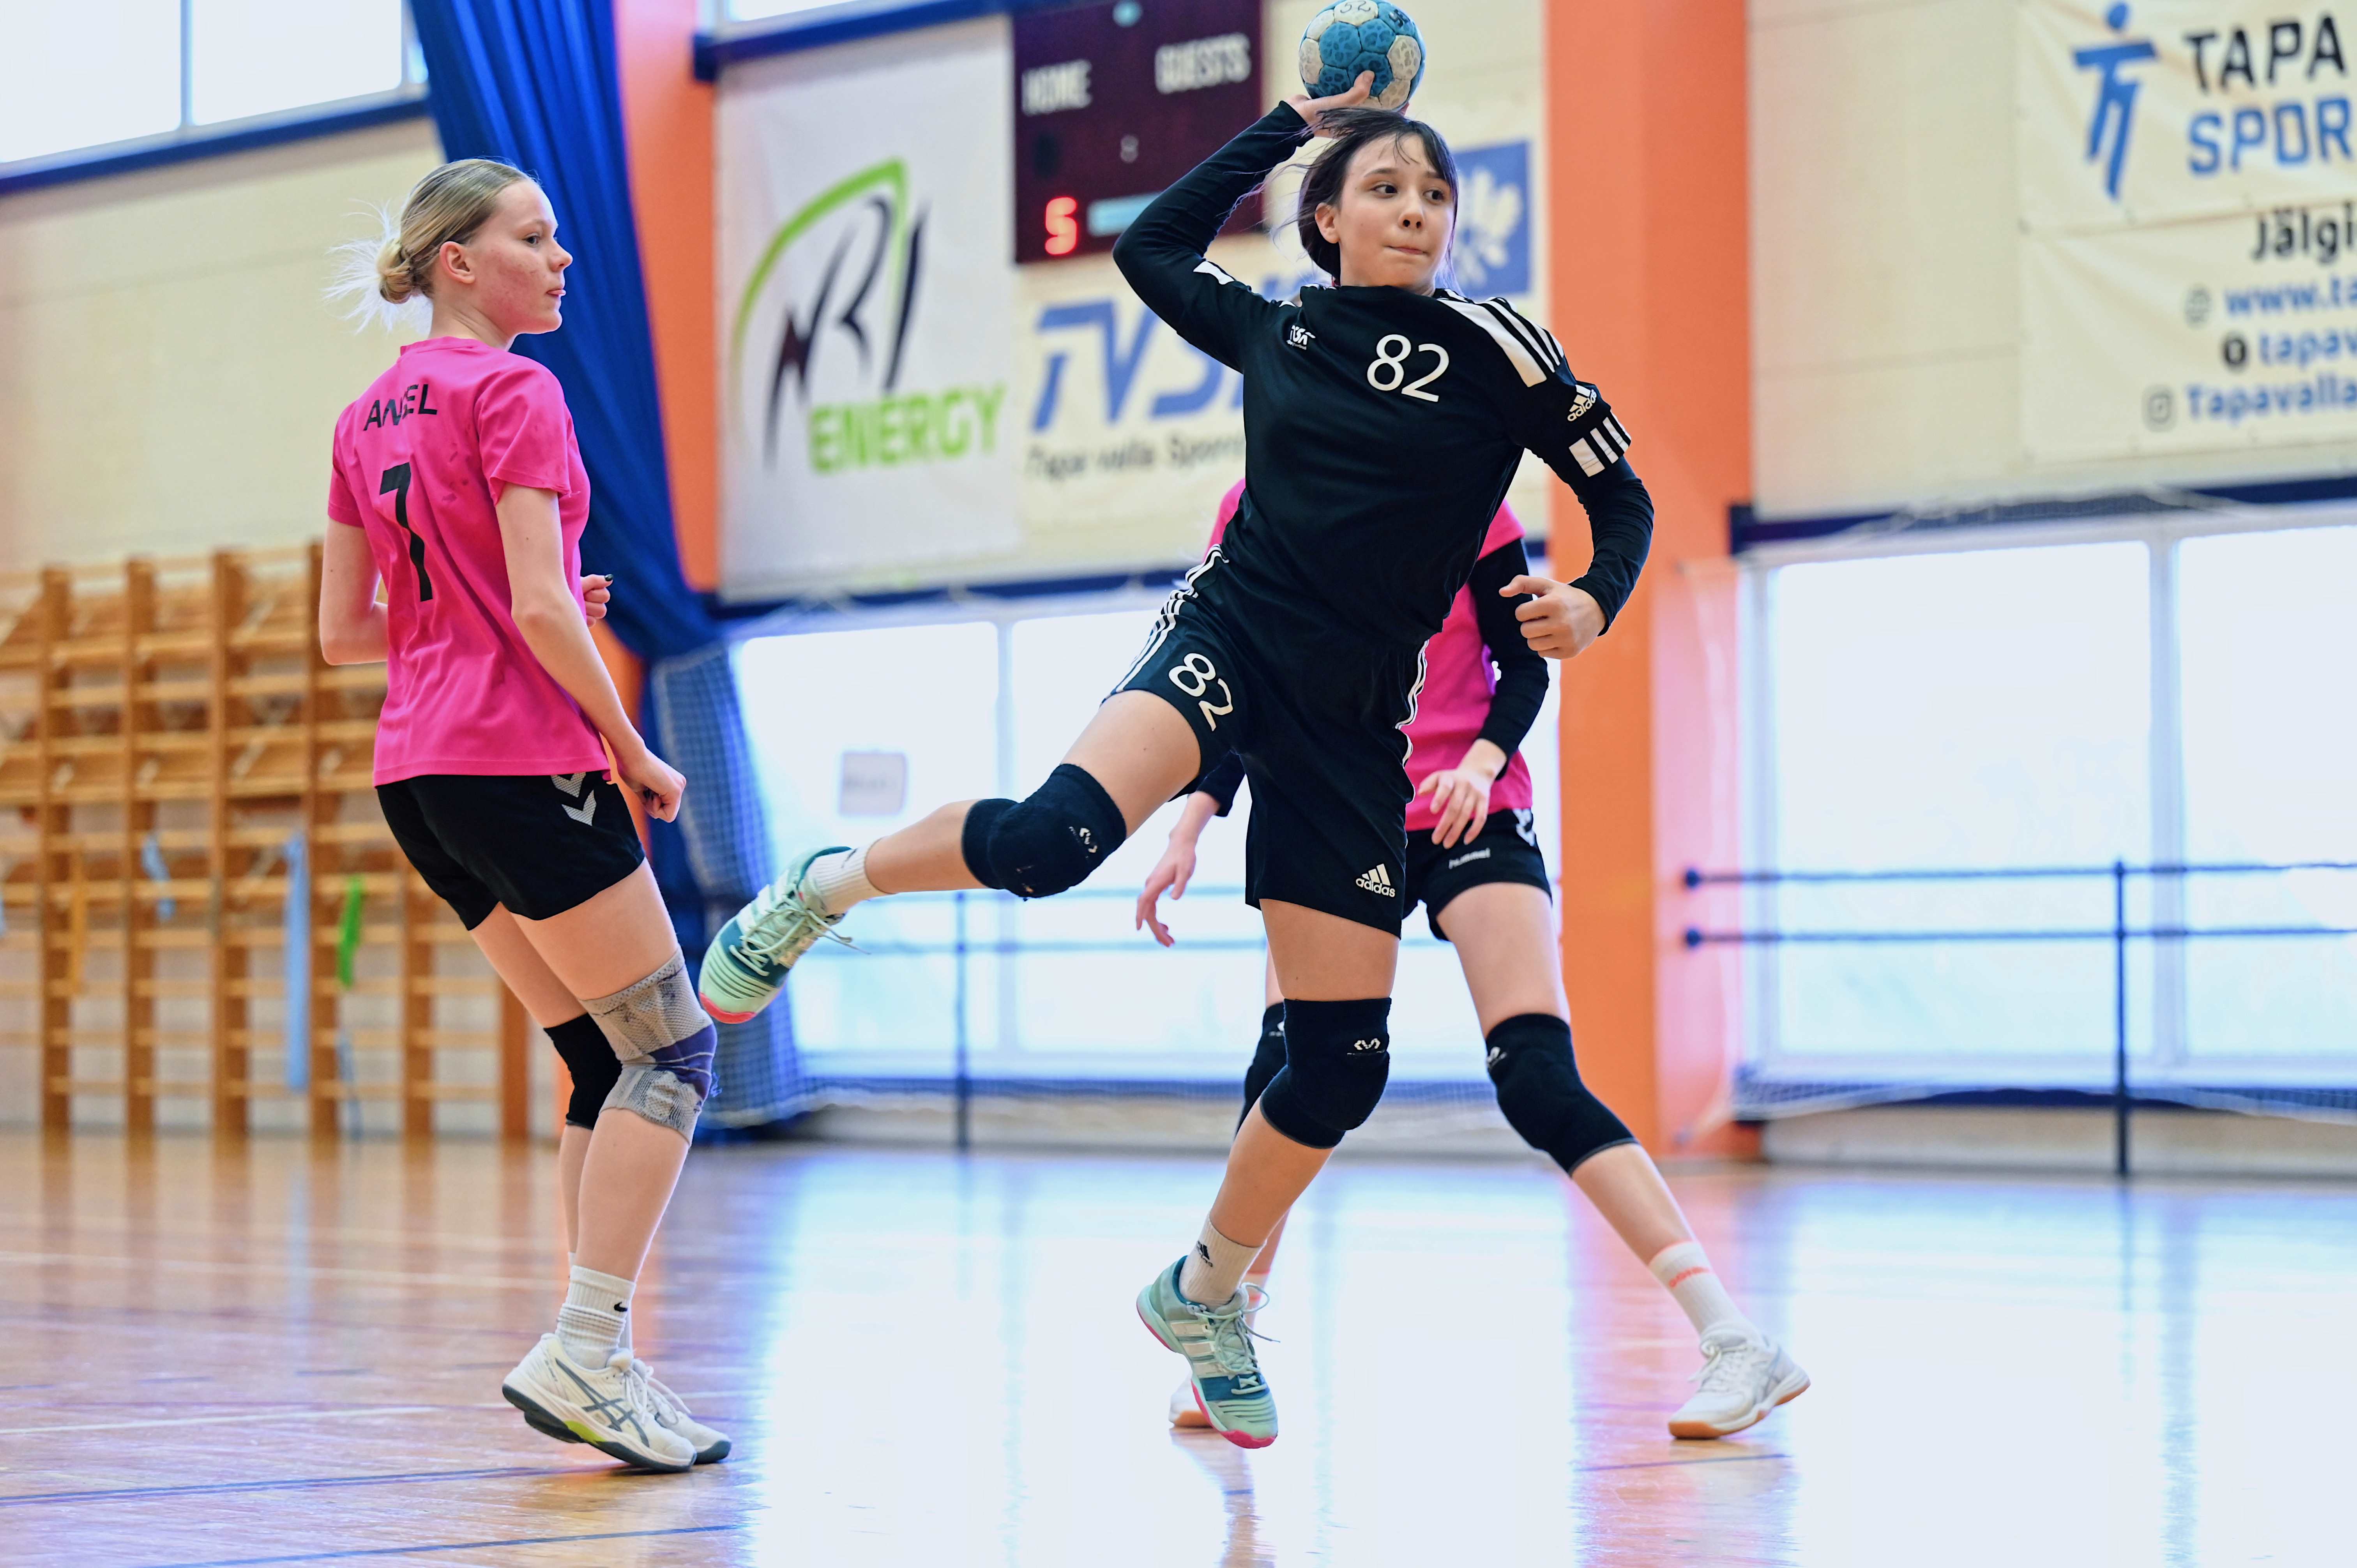 Tütarlaste C2 vanuseklassi 2024 Eesti meistrivõistlustel käsipallis on jäänud mängida veel viimane võistluspäev